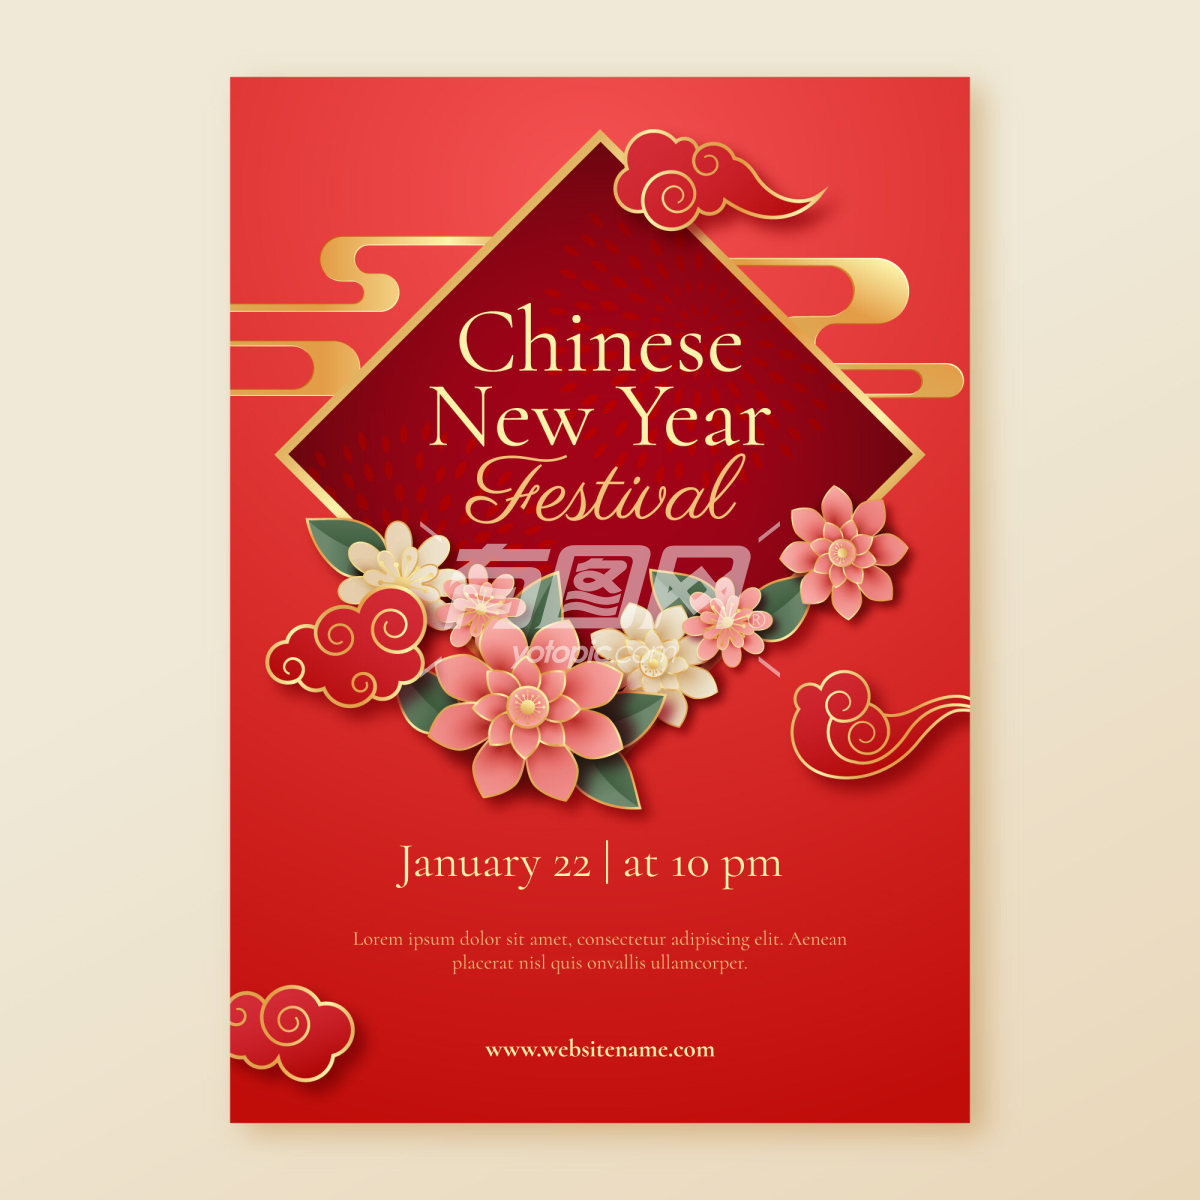 中国新年为主题的海报